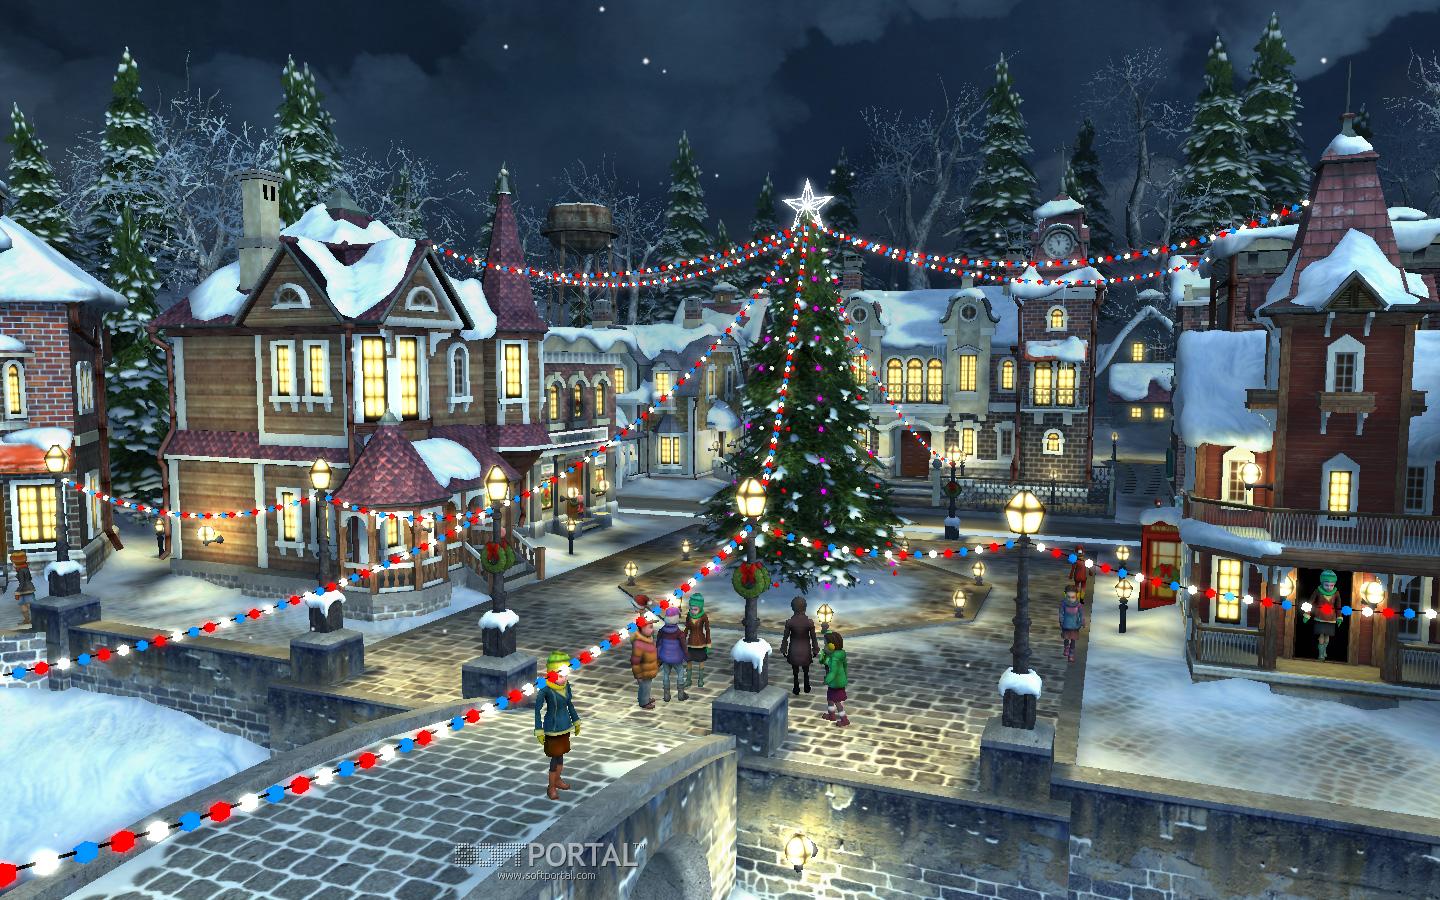 Trang trí màn hình của mình với hình nền Làng tuyết Giáng sinh sẽ làm bạn cảm thấy rất thoải mái và thư giãn trong mùa lễ hội năm nay. Làng tuyết ấm cúng, huyền bí và rất hấp dẫn!